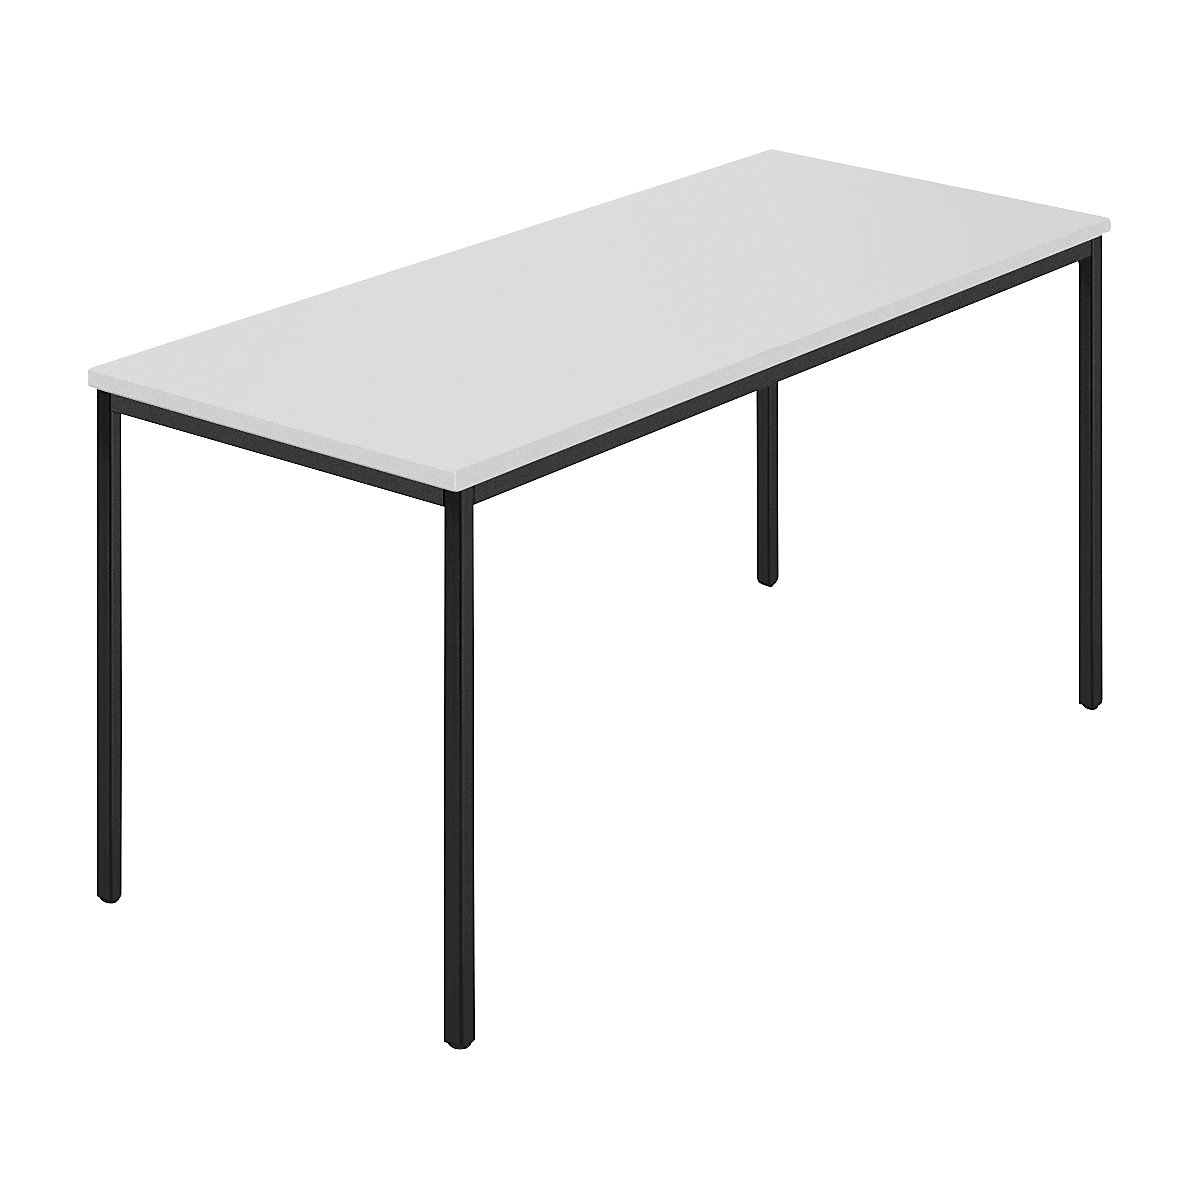 Rechthoekige tafel, vierkante buis met coating, b x d = 1400 x 700 mm, grijs / antracietkleurig-6